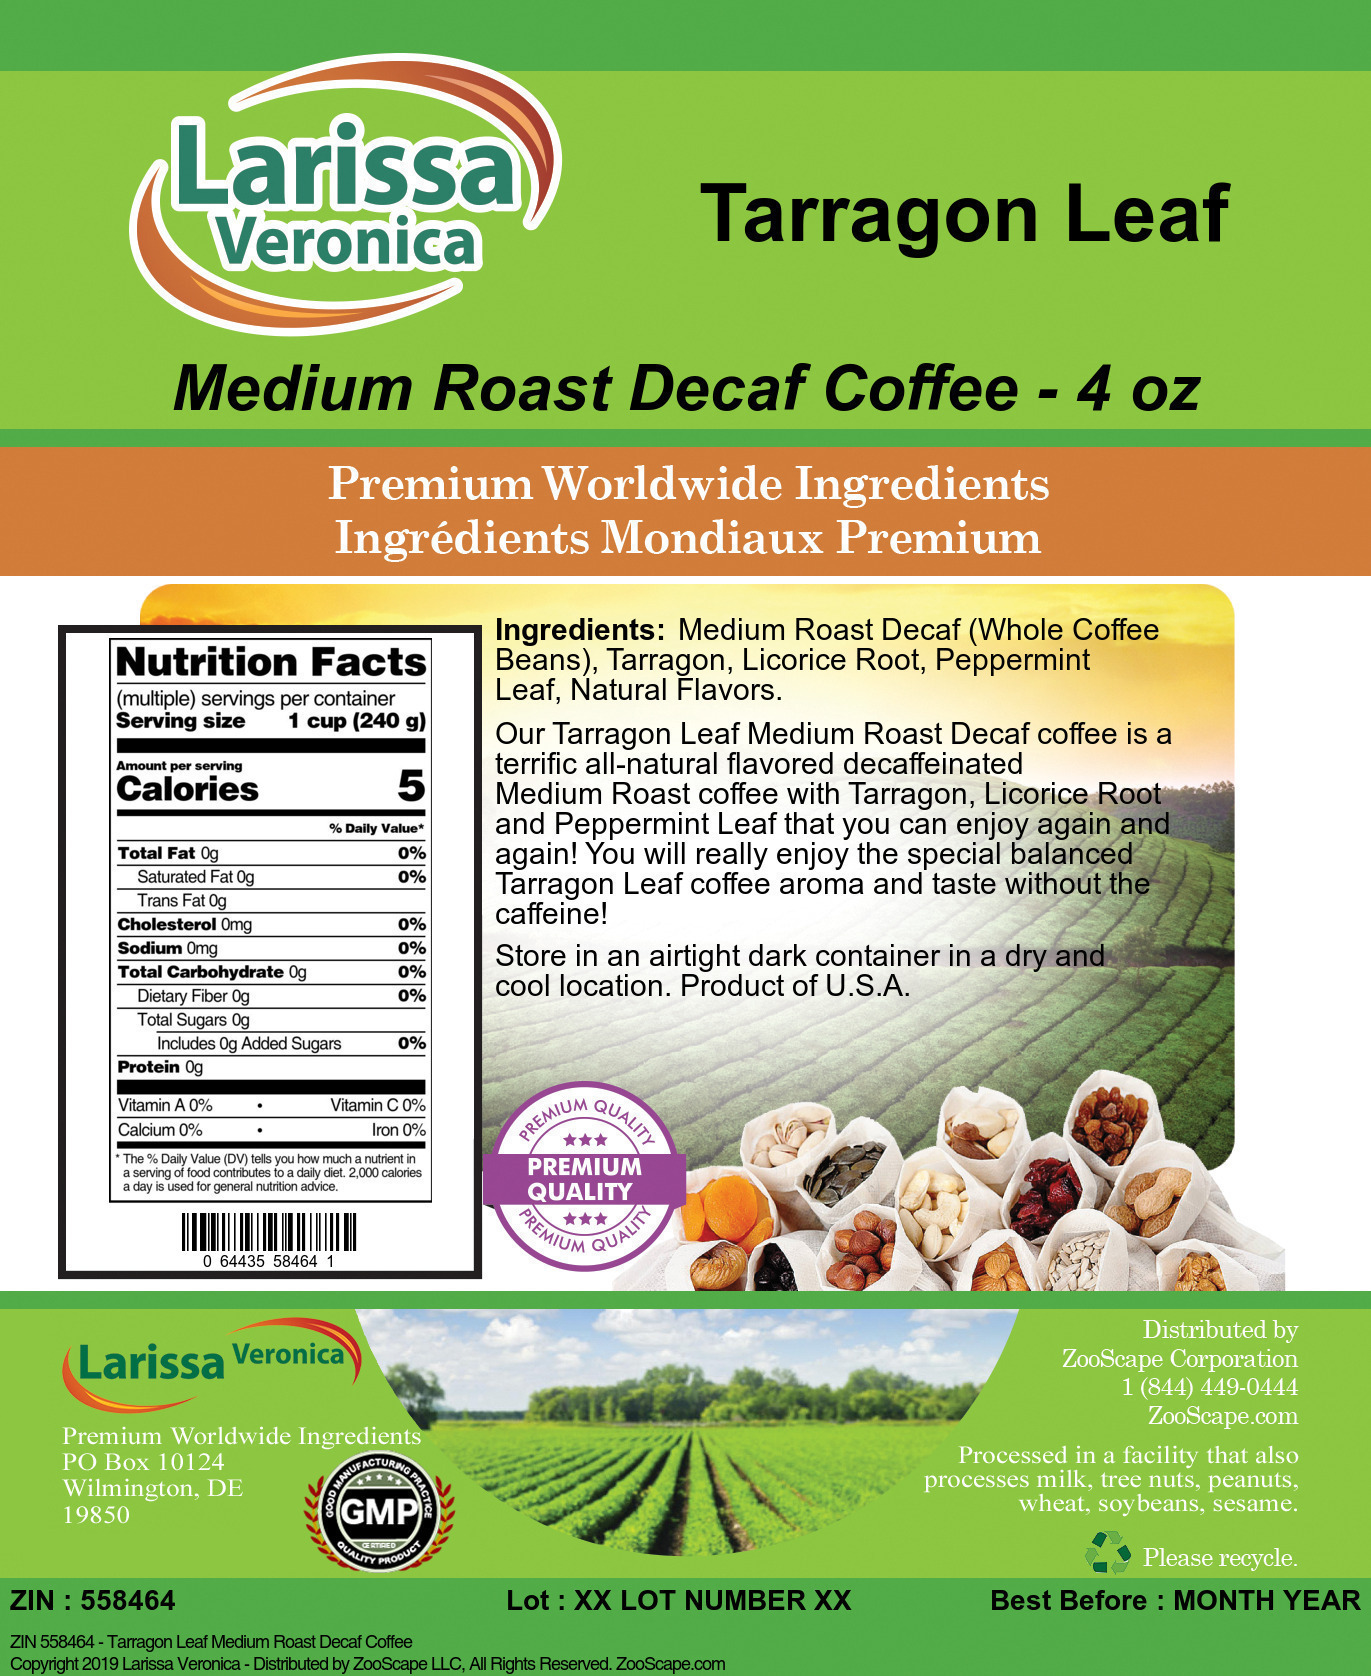 Tarragon Leaf Medium Roast Decaf Coffee - Label